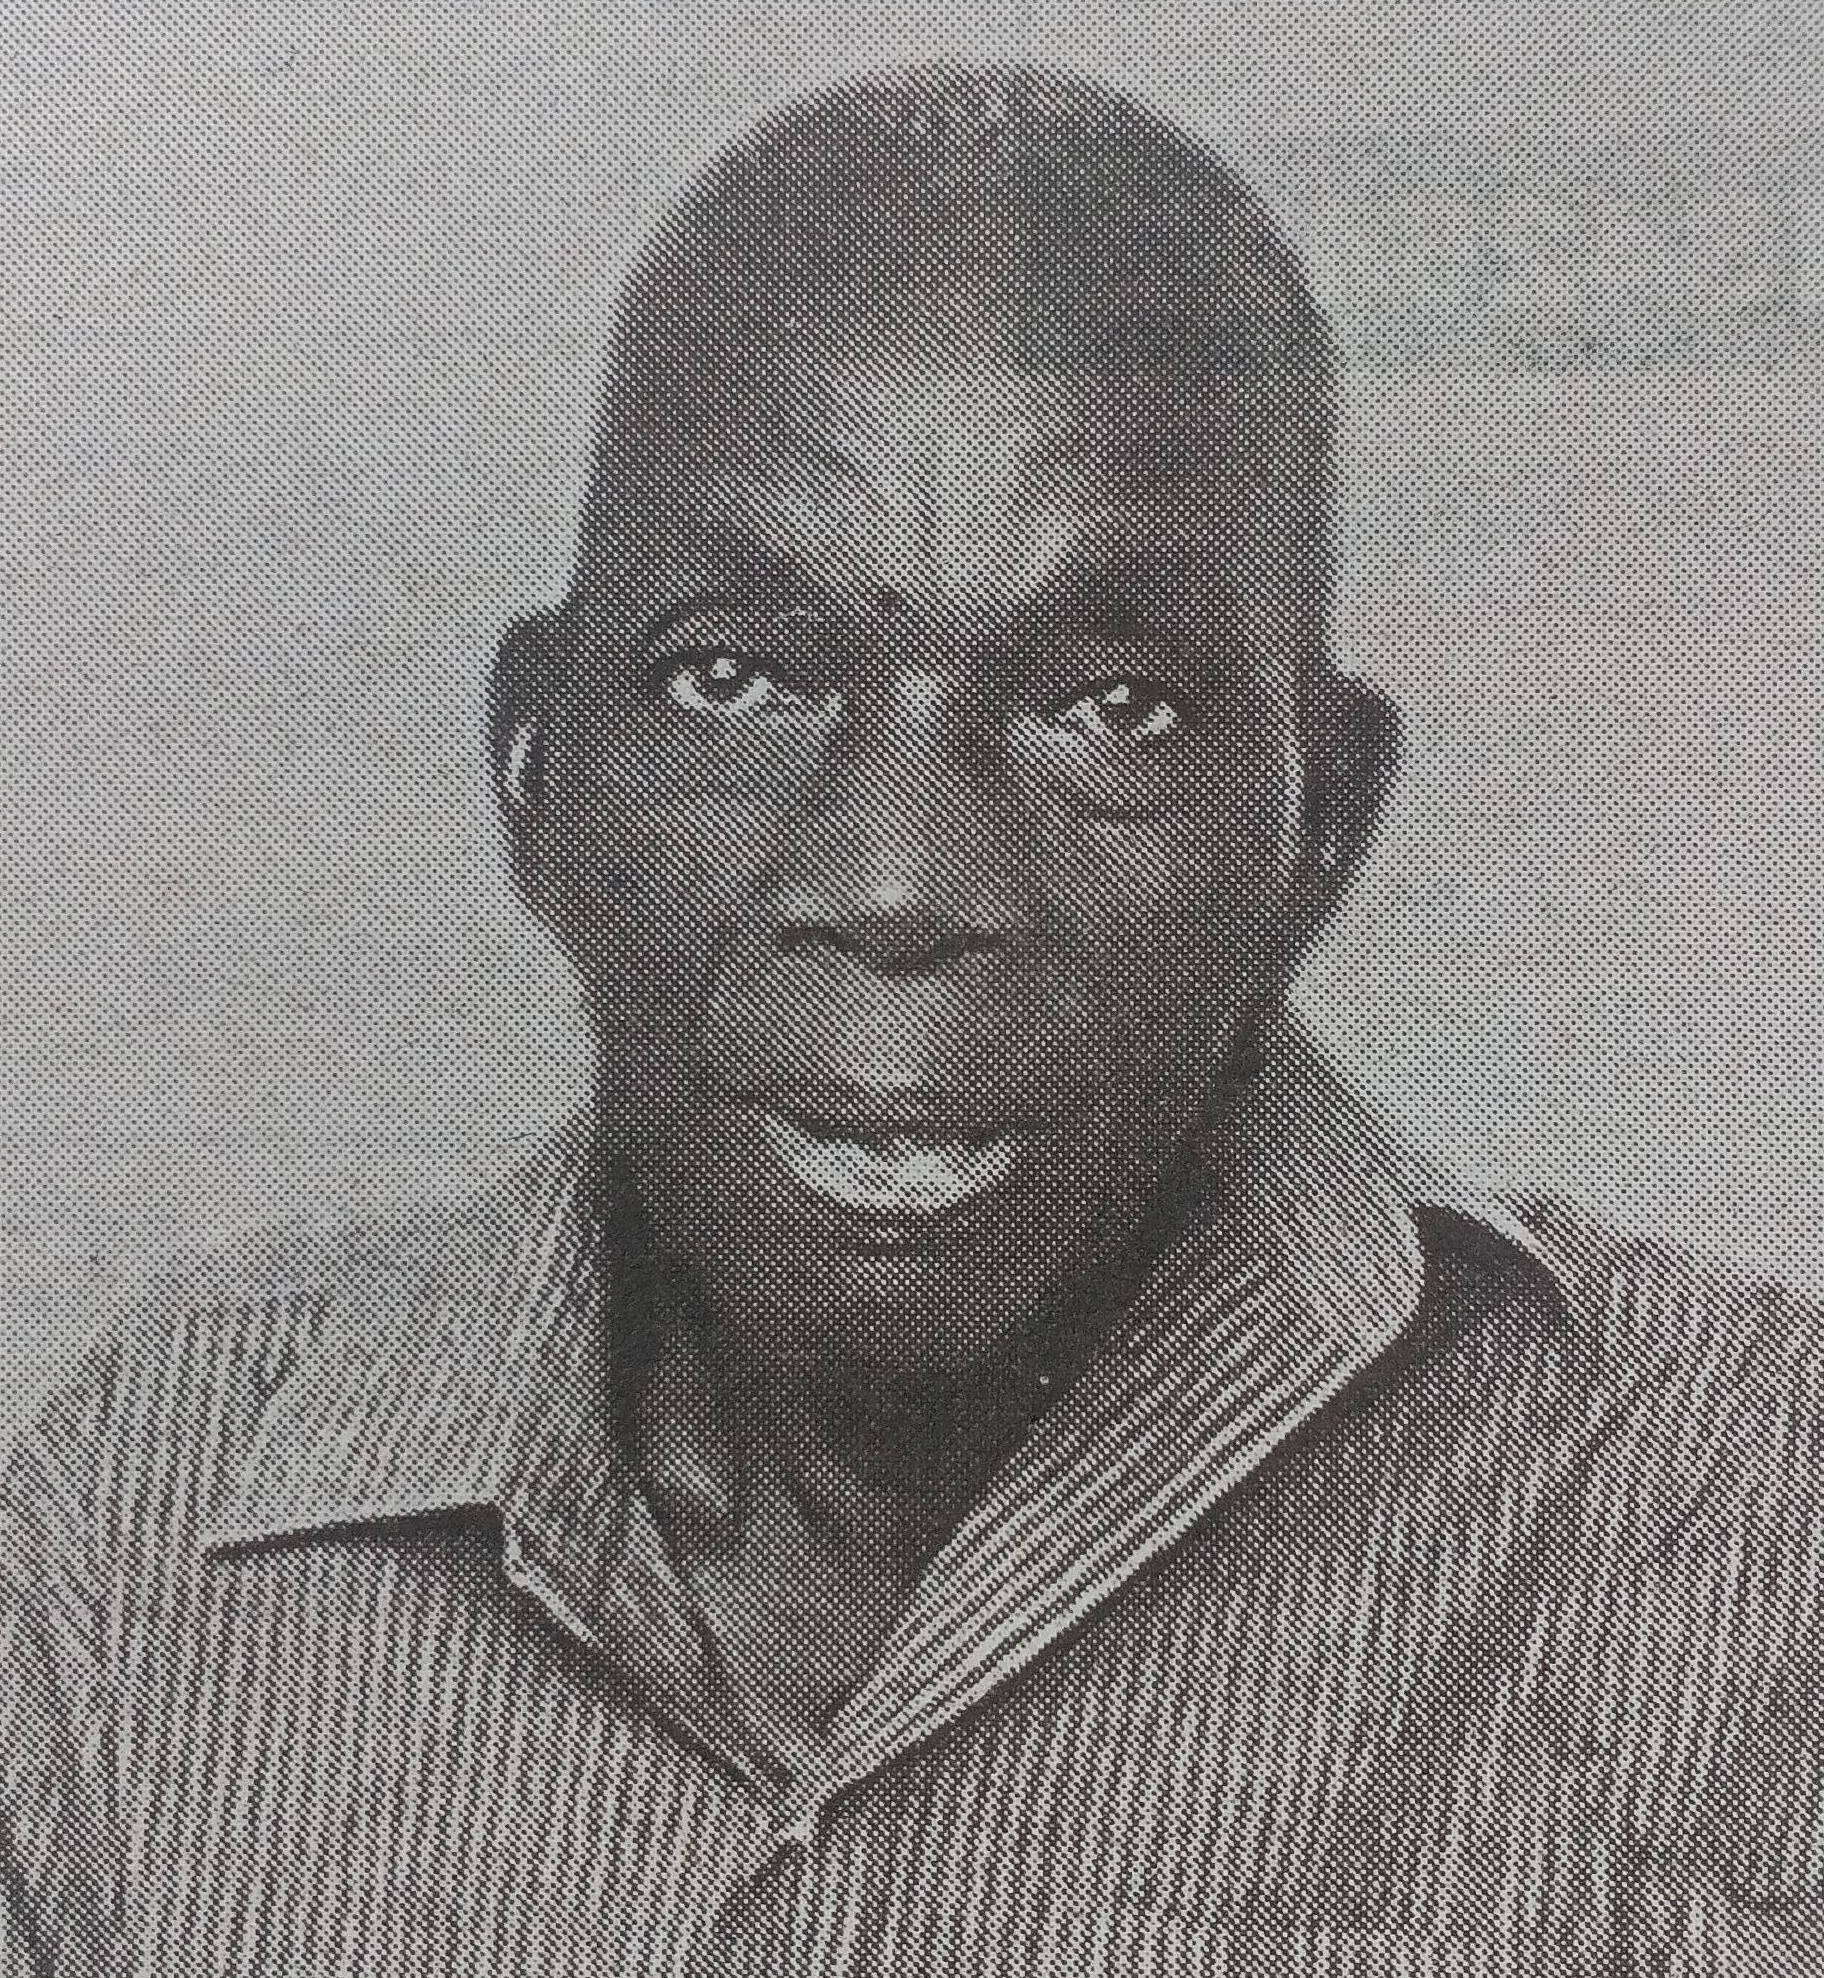 Obituary Image of Chrisantus Ongeta Makori Sunrise 1937 - Sunset 2017